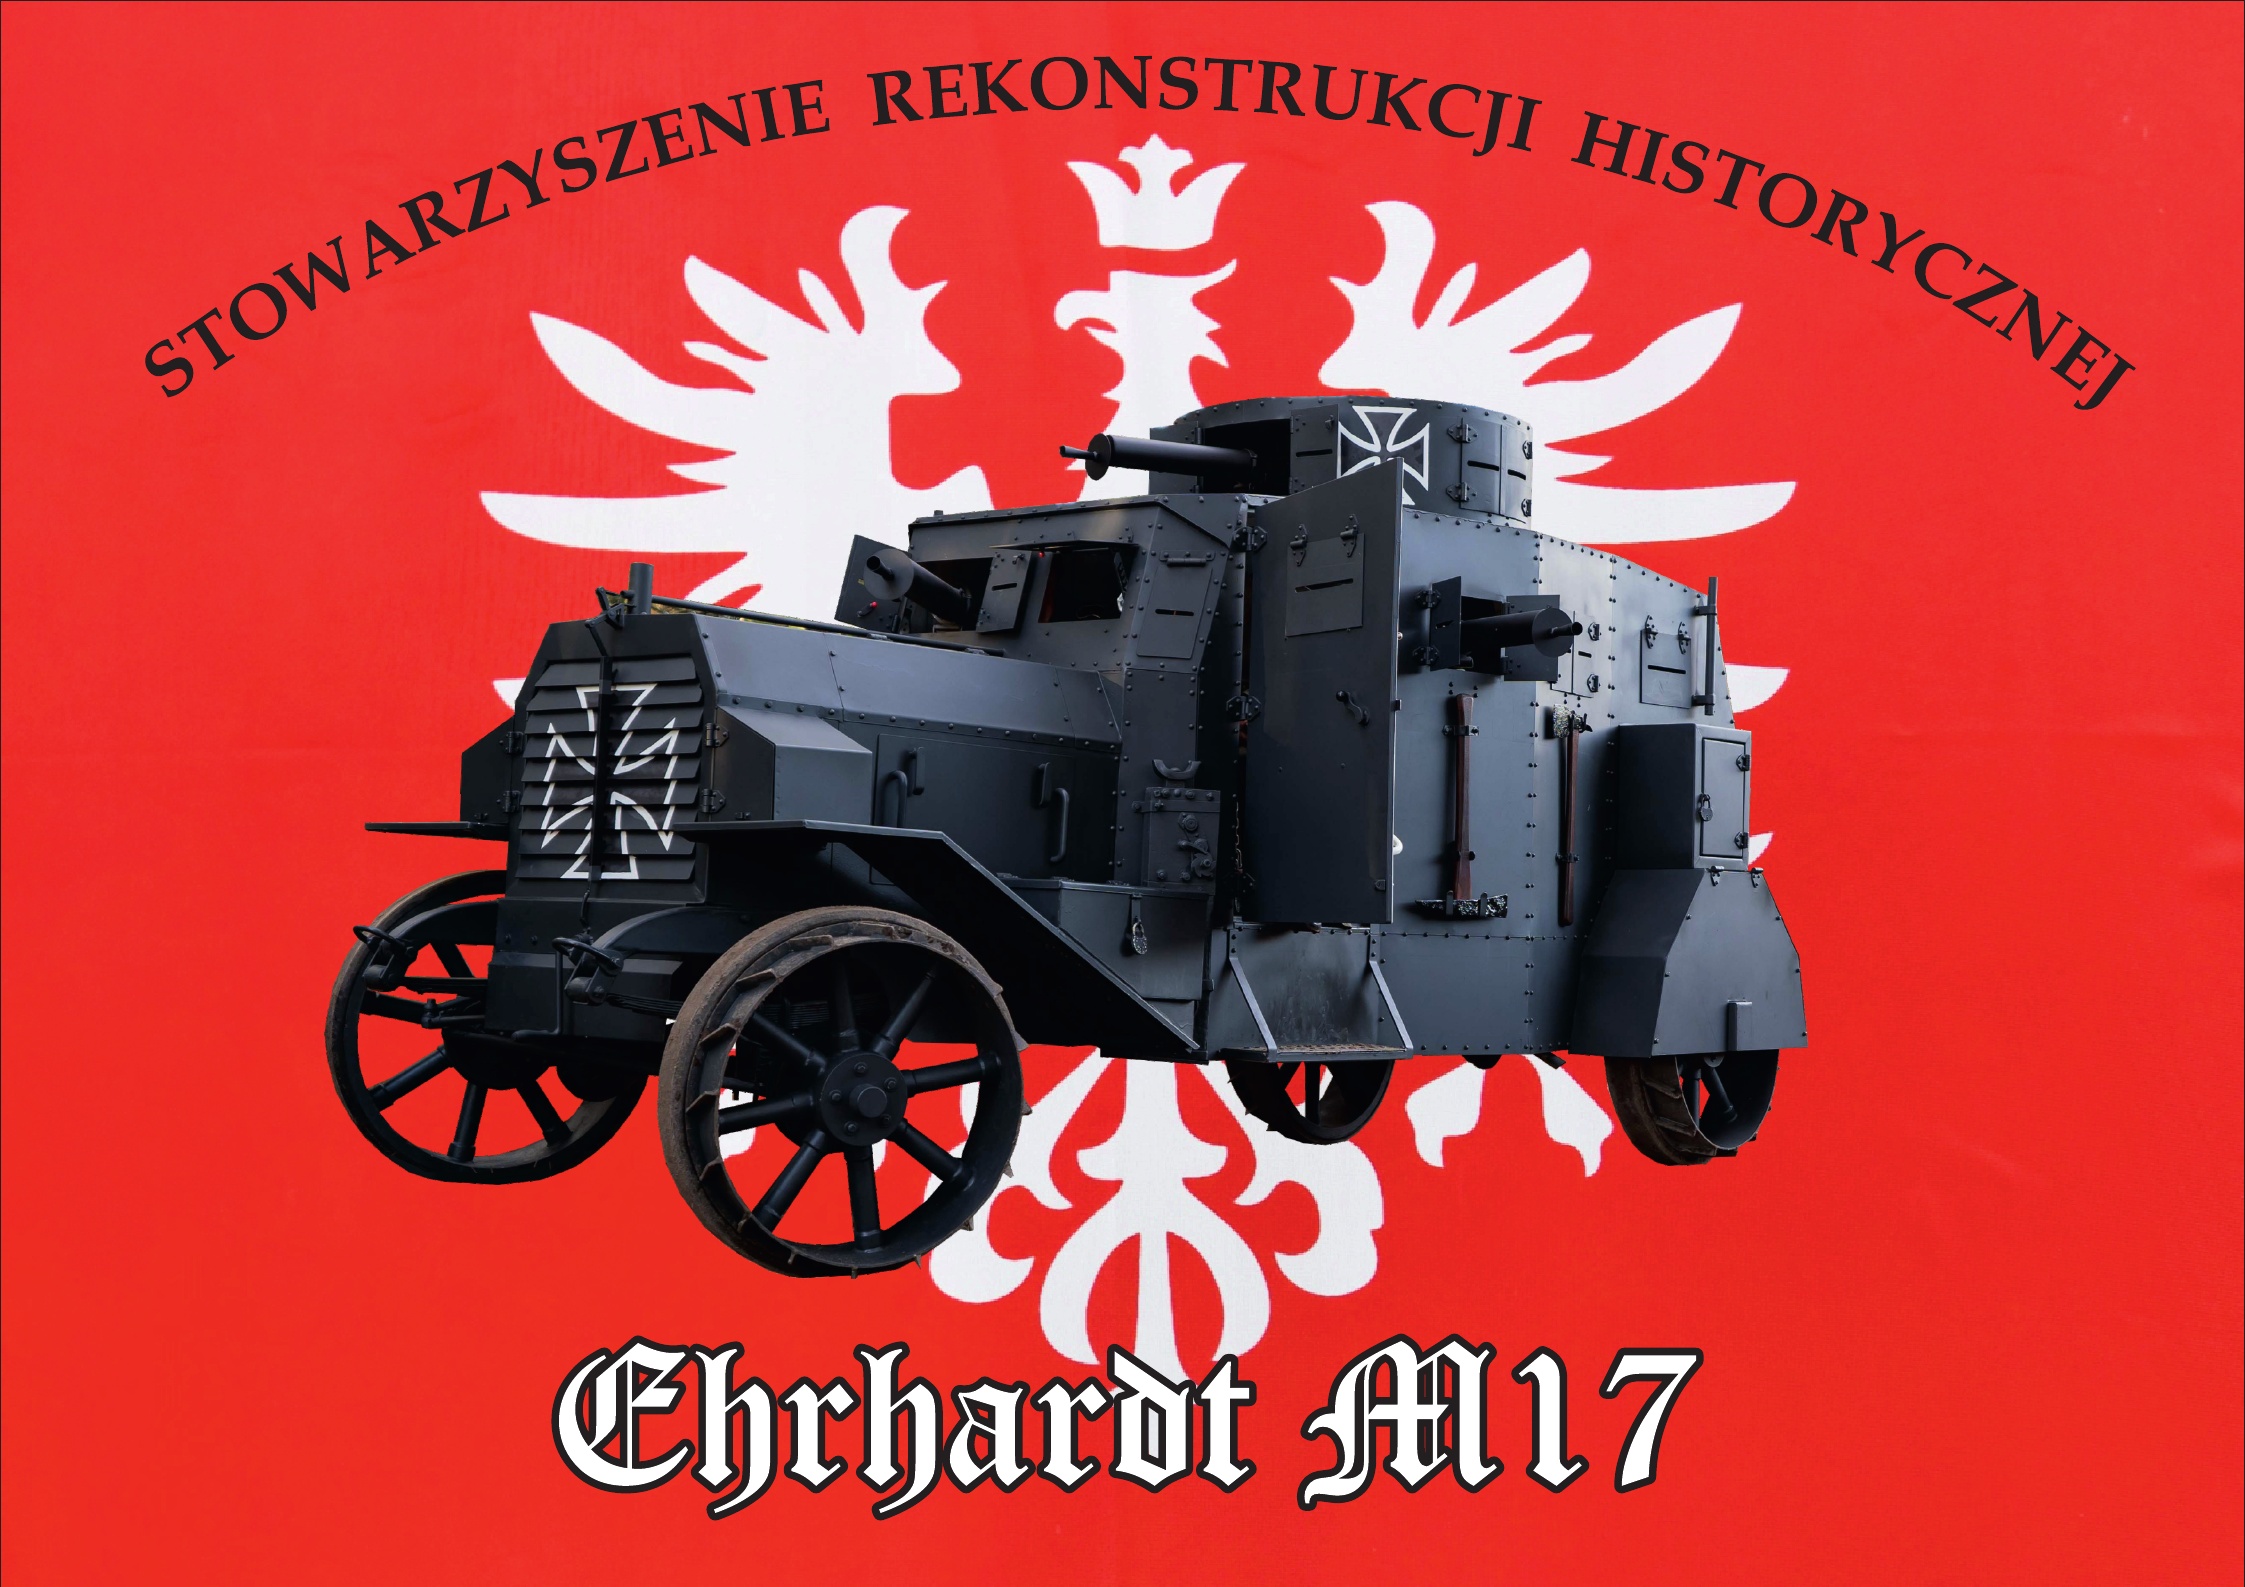 Stowarzyszenie Rekonstrukcji Historycznej Ehrhardt M17 